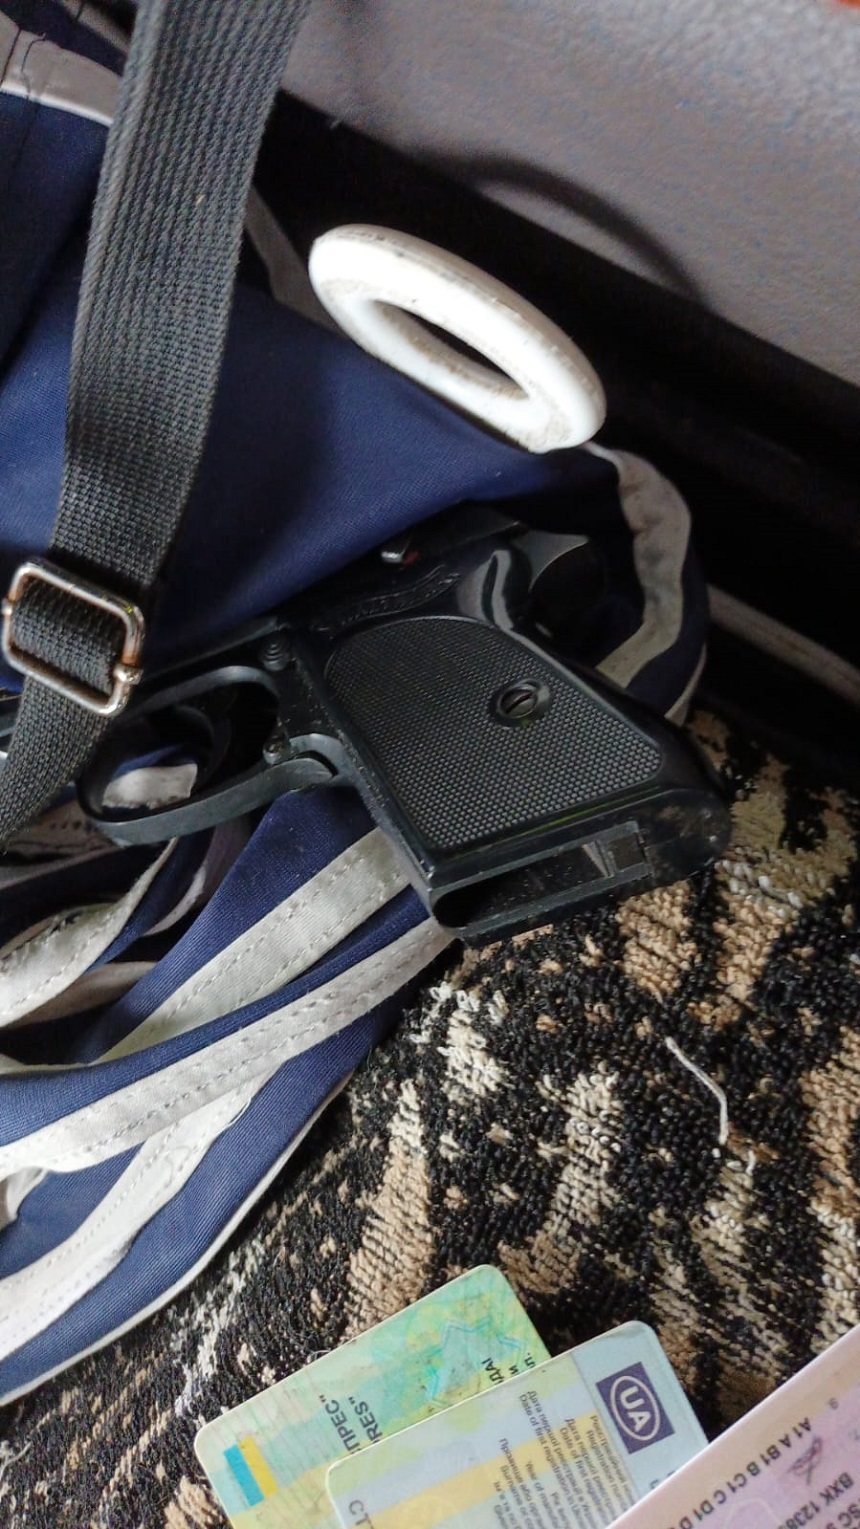 Un pistol marca Walther, un încărcător şi cinci cartuşe,  descoperite la Vama Albiţa, într-un autocamion condus de un cetăţean ucrainean - FOTO

